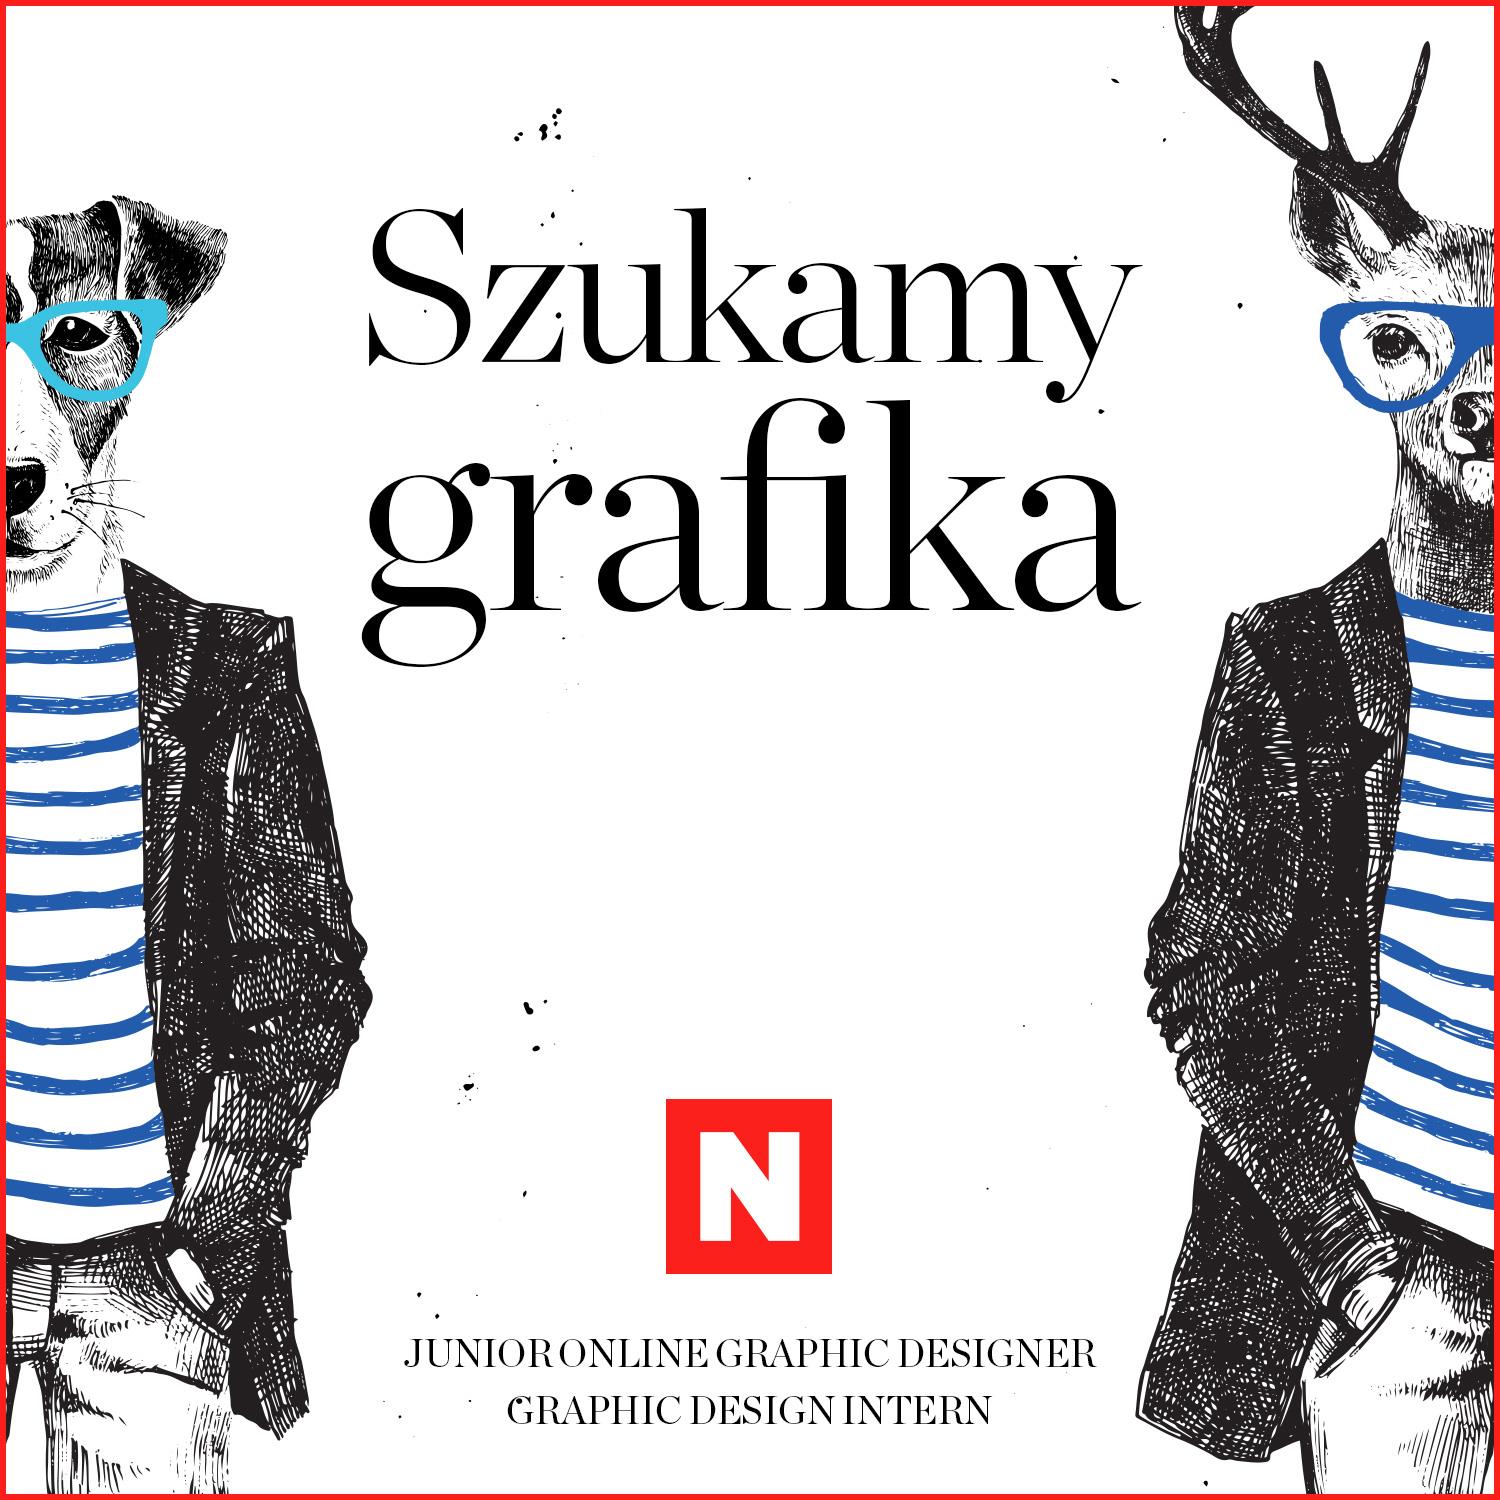 Newsweek.pl i Forbes.pl szukają grafików! - Styl Życia - Newsweek.pl